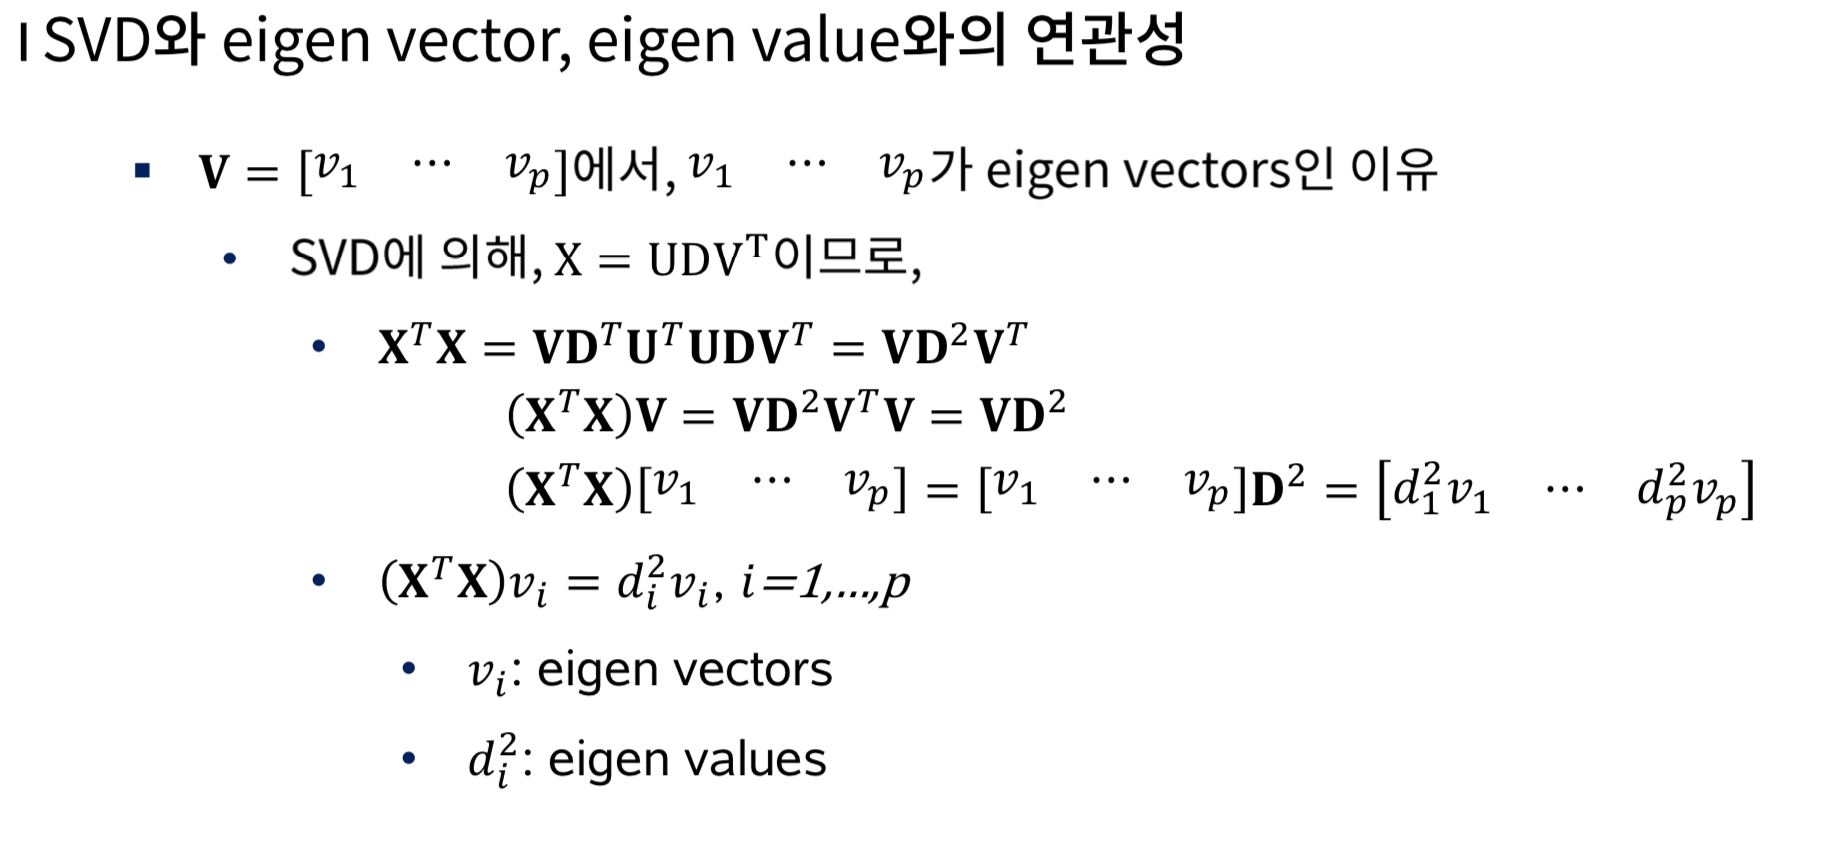 SVD와 eigen vector, eigen value와의 연과성